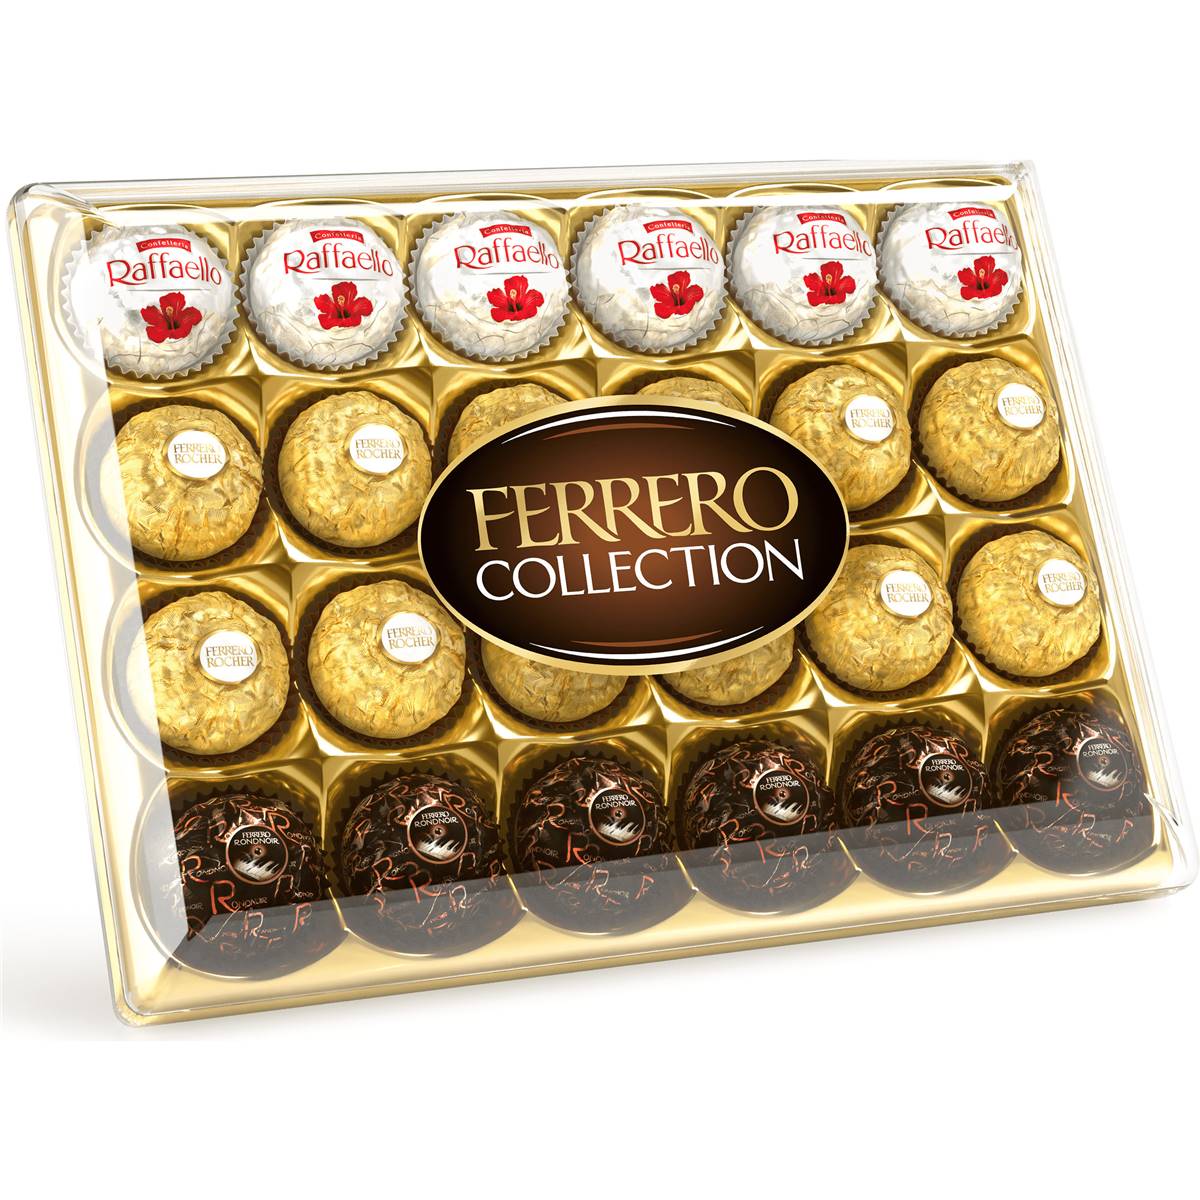 Calories in Ferrero Collection Chocolates Rocher Rondnoir Raffaello